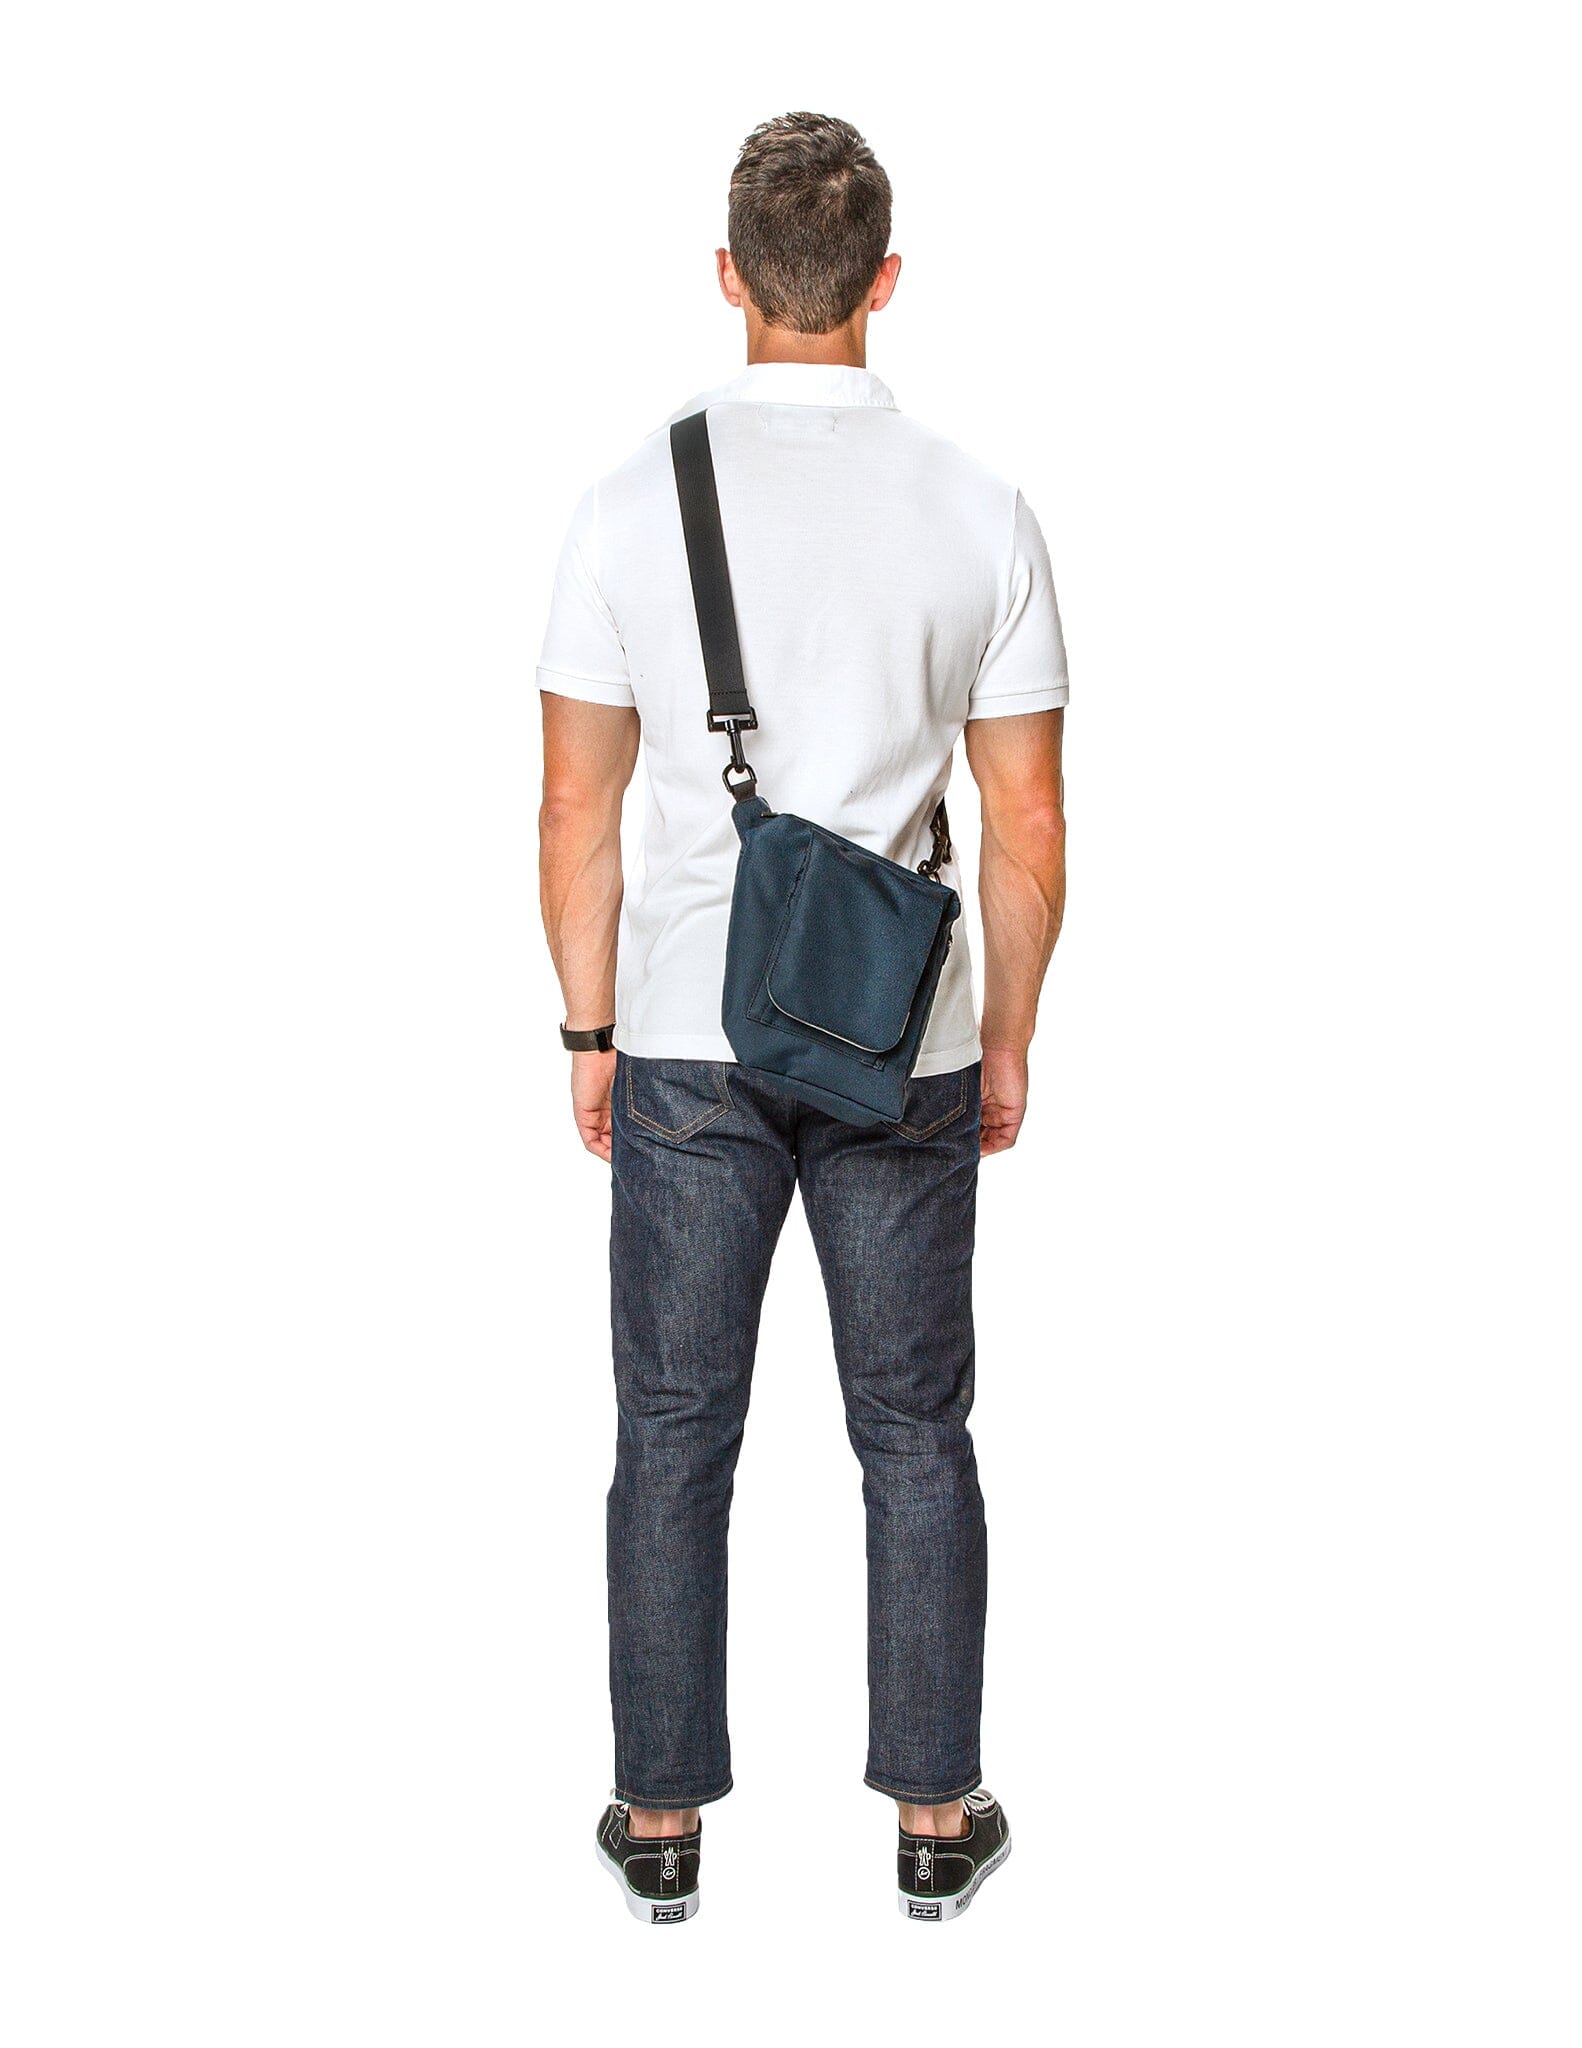 Small Carry - Lunar Blue Bag bolstr   